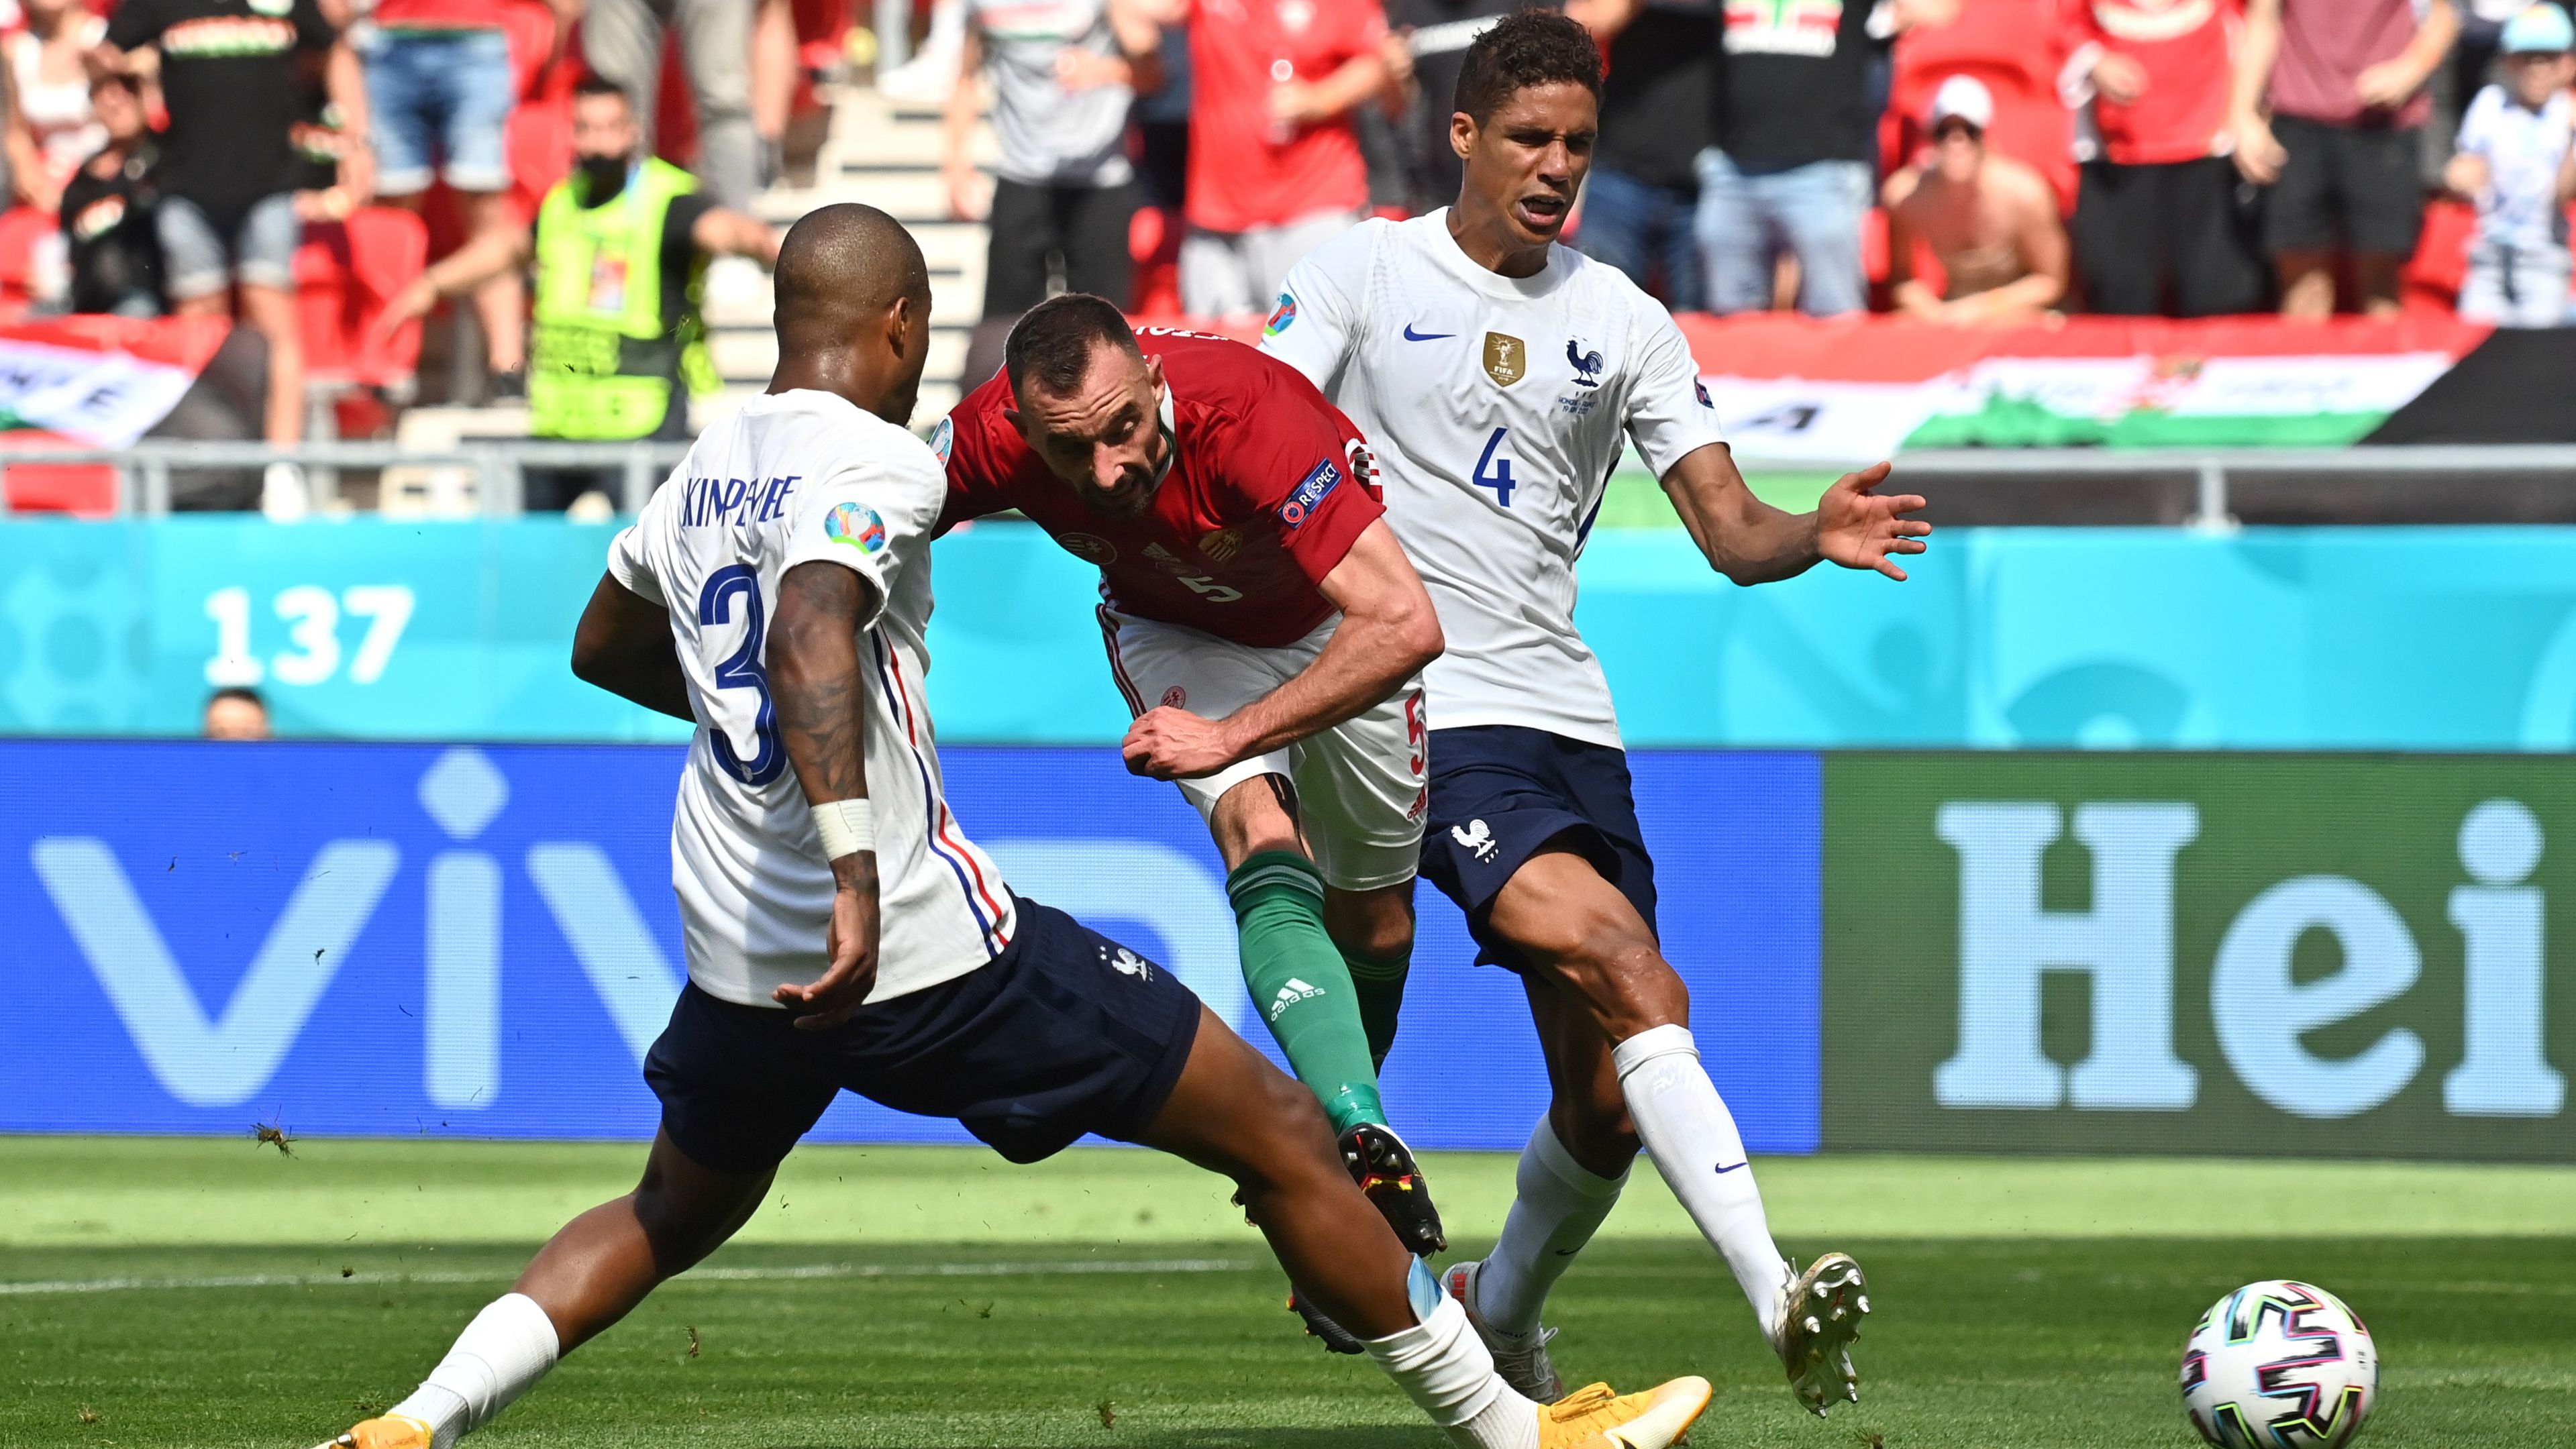 Fiola a 2021-es Eb-n felejthetetlen gólt lőtt a franciáknak /Fotó: Getty Images